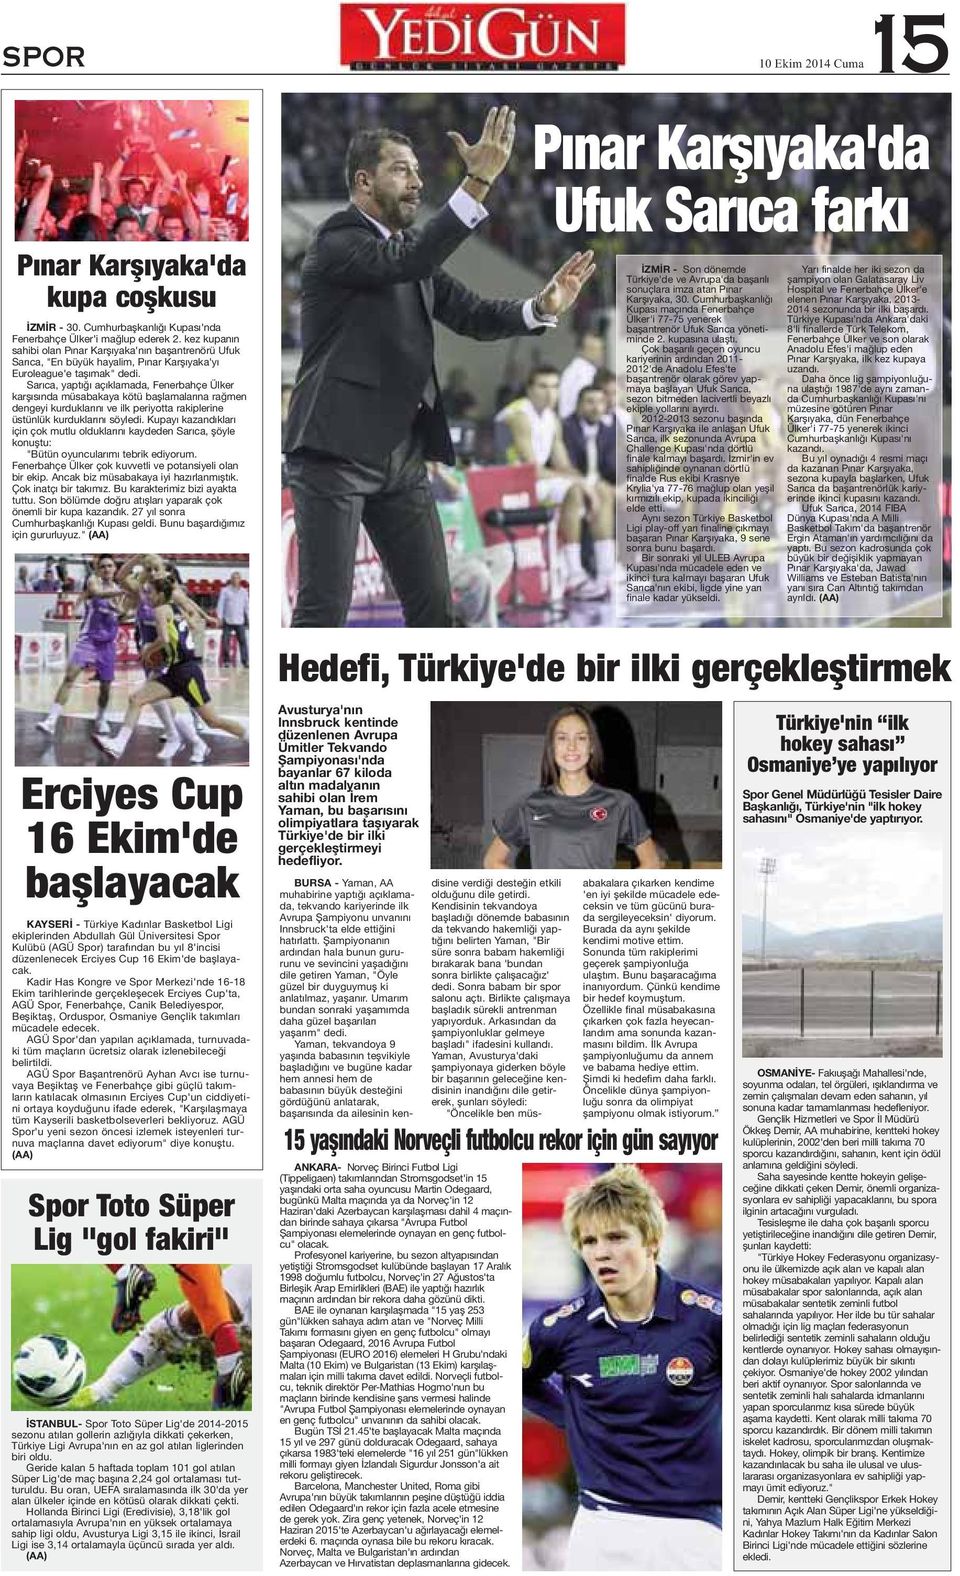 Sarıca, yaptığı açıklamada, Fenerbahçe Ülker karşısında müsabakaya kötü başlamalarına rağmen dengeyi kurduklarını ve ilk periyotta rakiplerine üstünlük kurduklarını Kupayı kazandıkları için çok mutlu